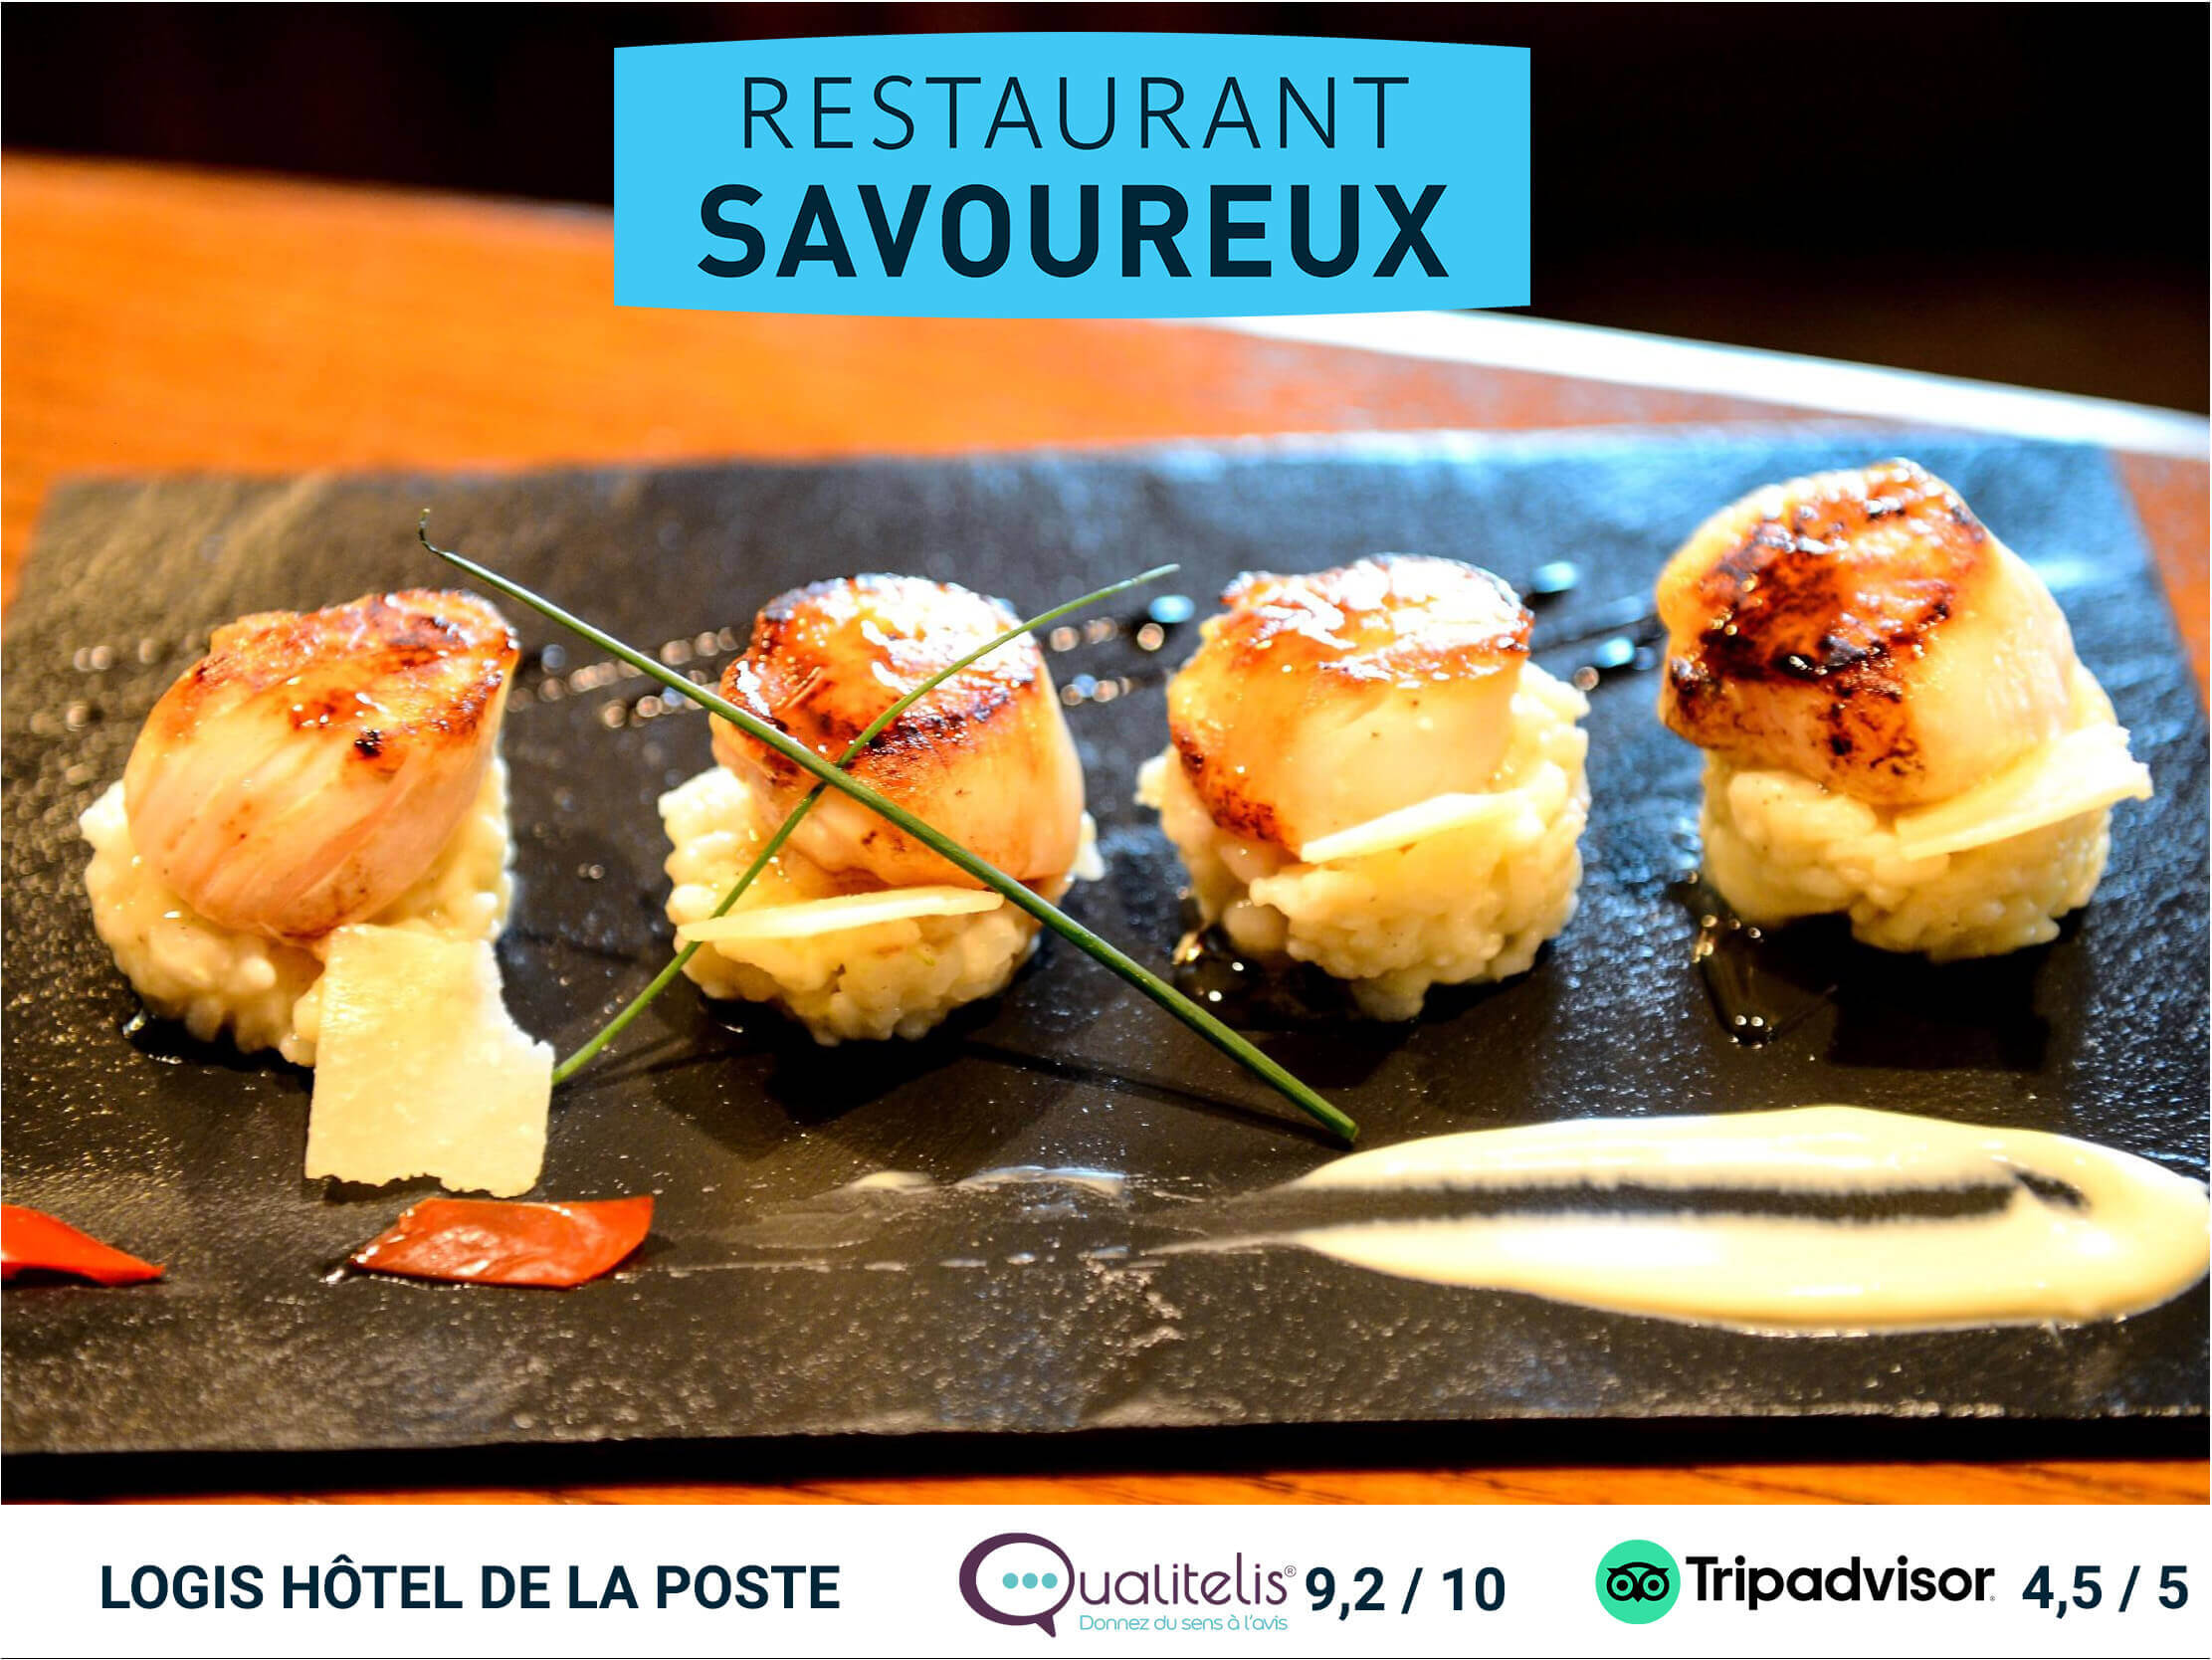 Restaurant Savoureux : LE PLAISIR D’UNE CUISINE TOUT EN FINESSE.